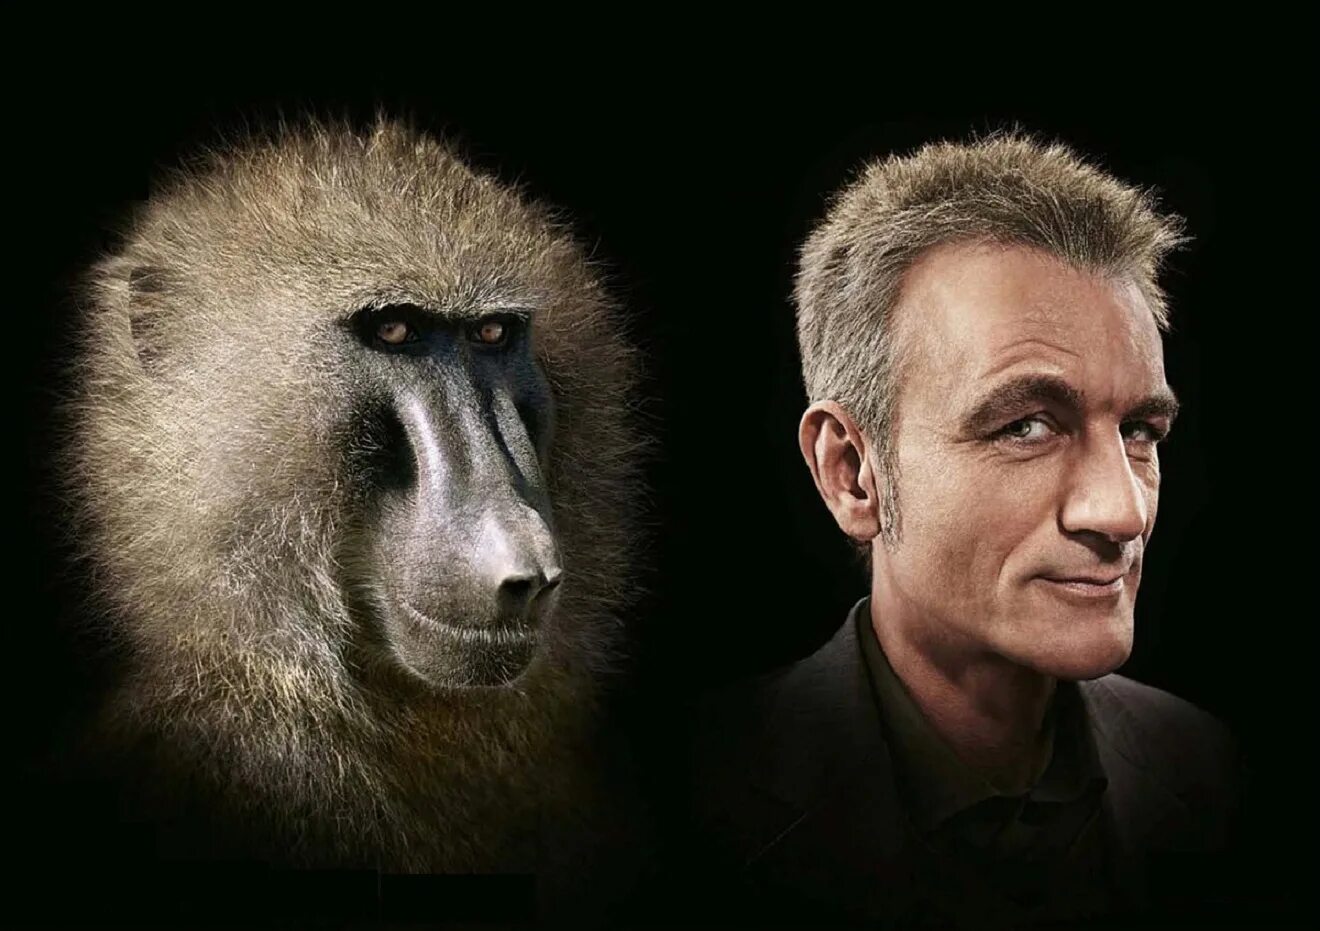 Различие между человеком и обезьяной. Реклама с обезьяной. Труд сделал из обезьяны человека. Обезьяна похожая на человека.